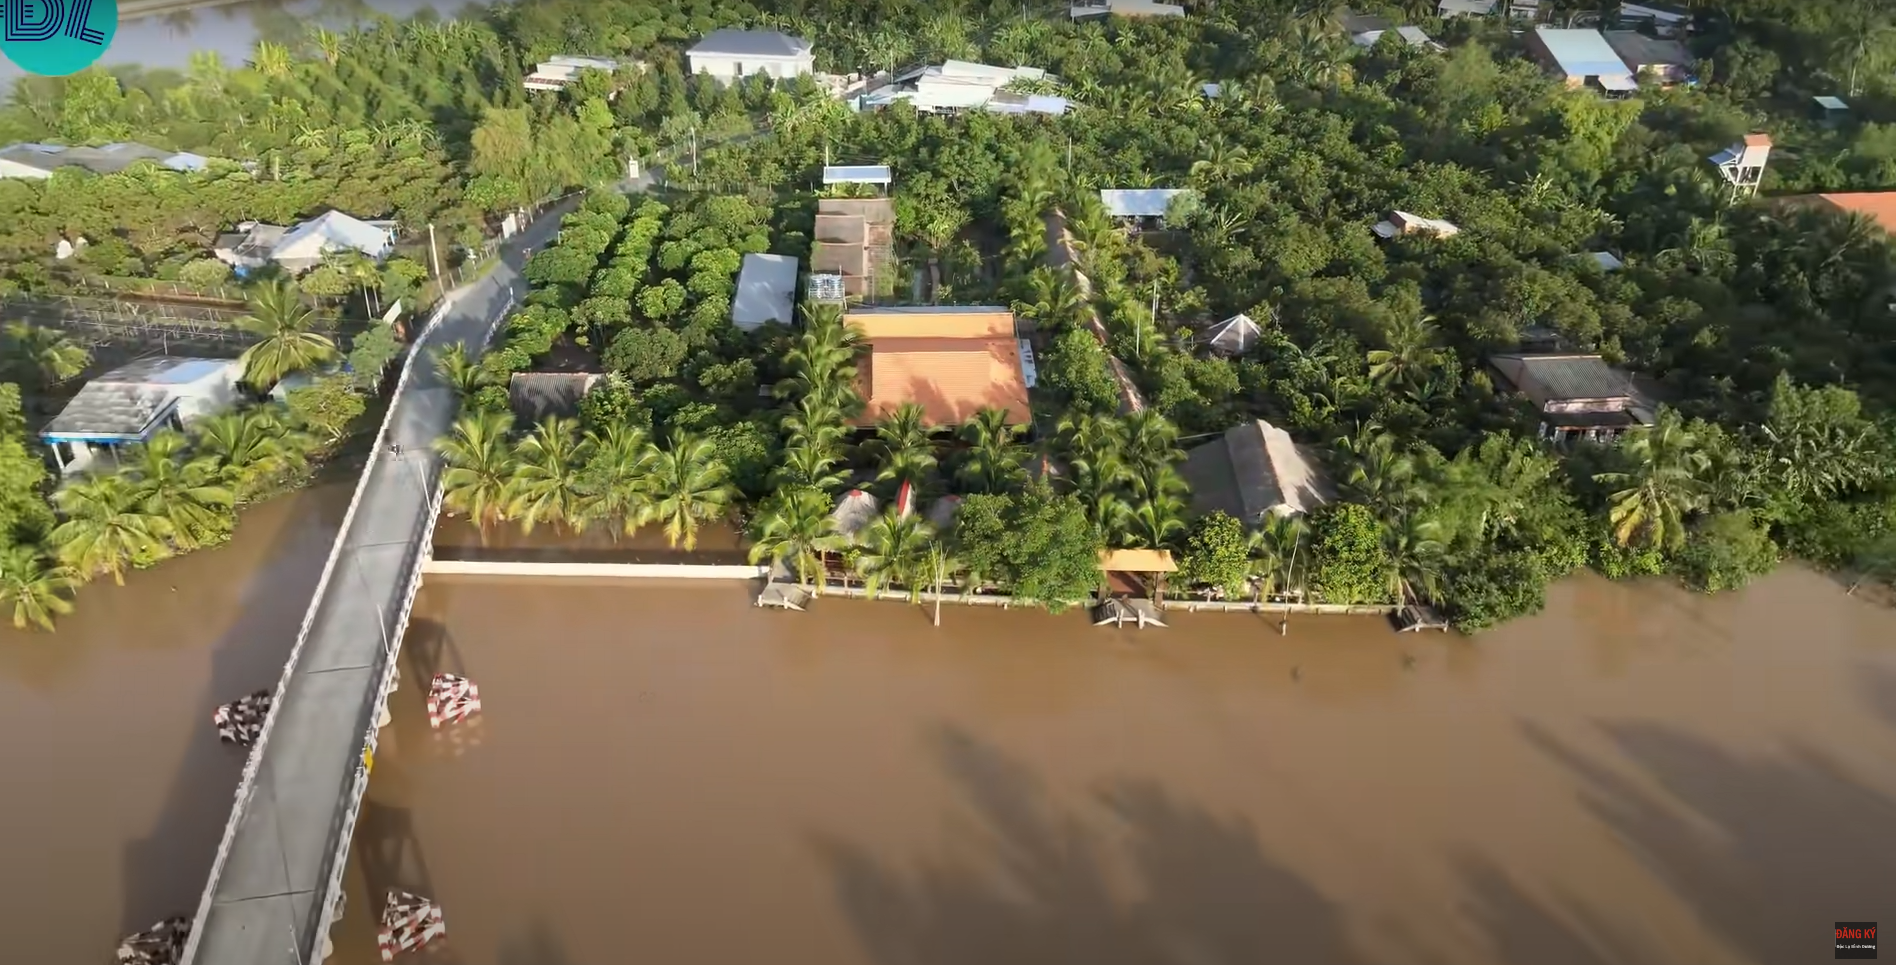 Biệt phủ của đại gia Vĩnh Long làm từ 4000 cây dừa, hồ cá Koi cũng ...